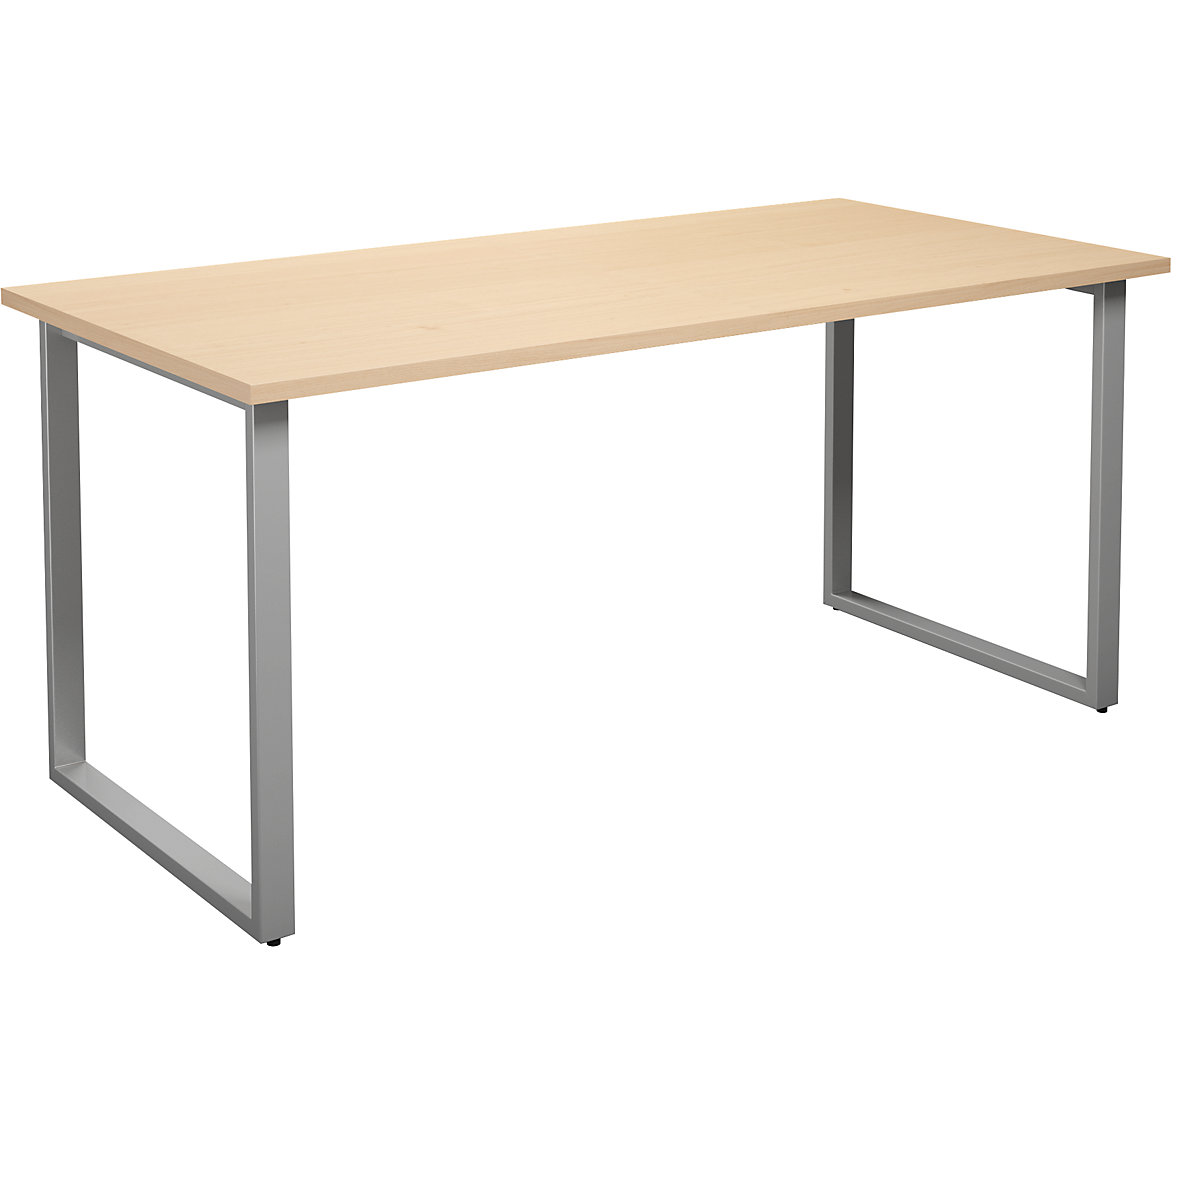 DUO-O multi-purpose desk, straight tabletop, WxD 1600 x 800 mm, birch, silver-4